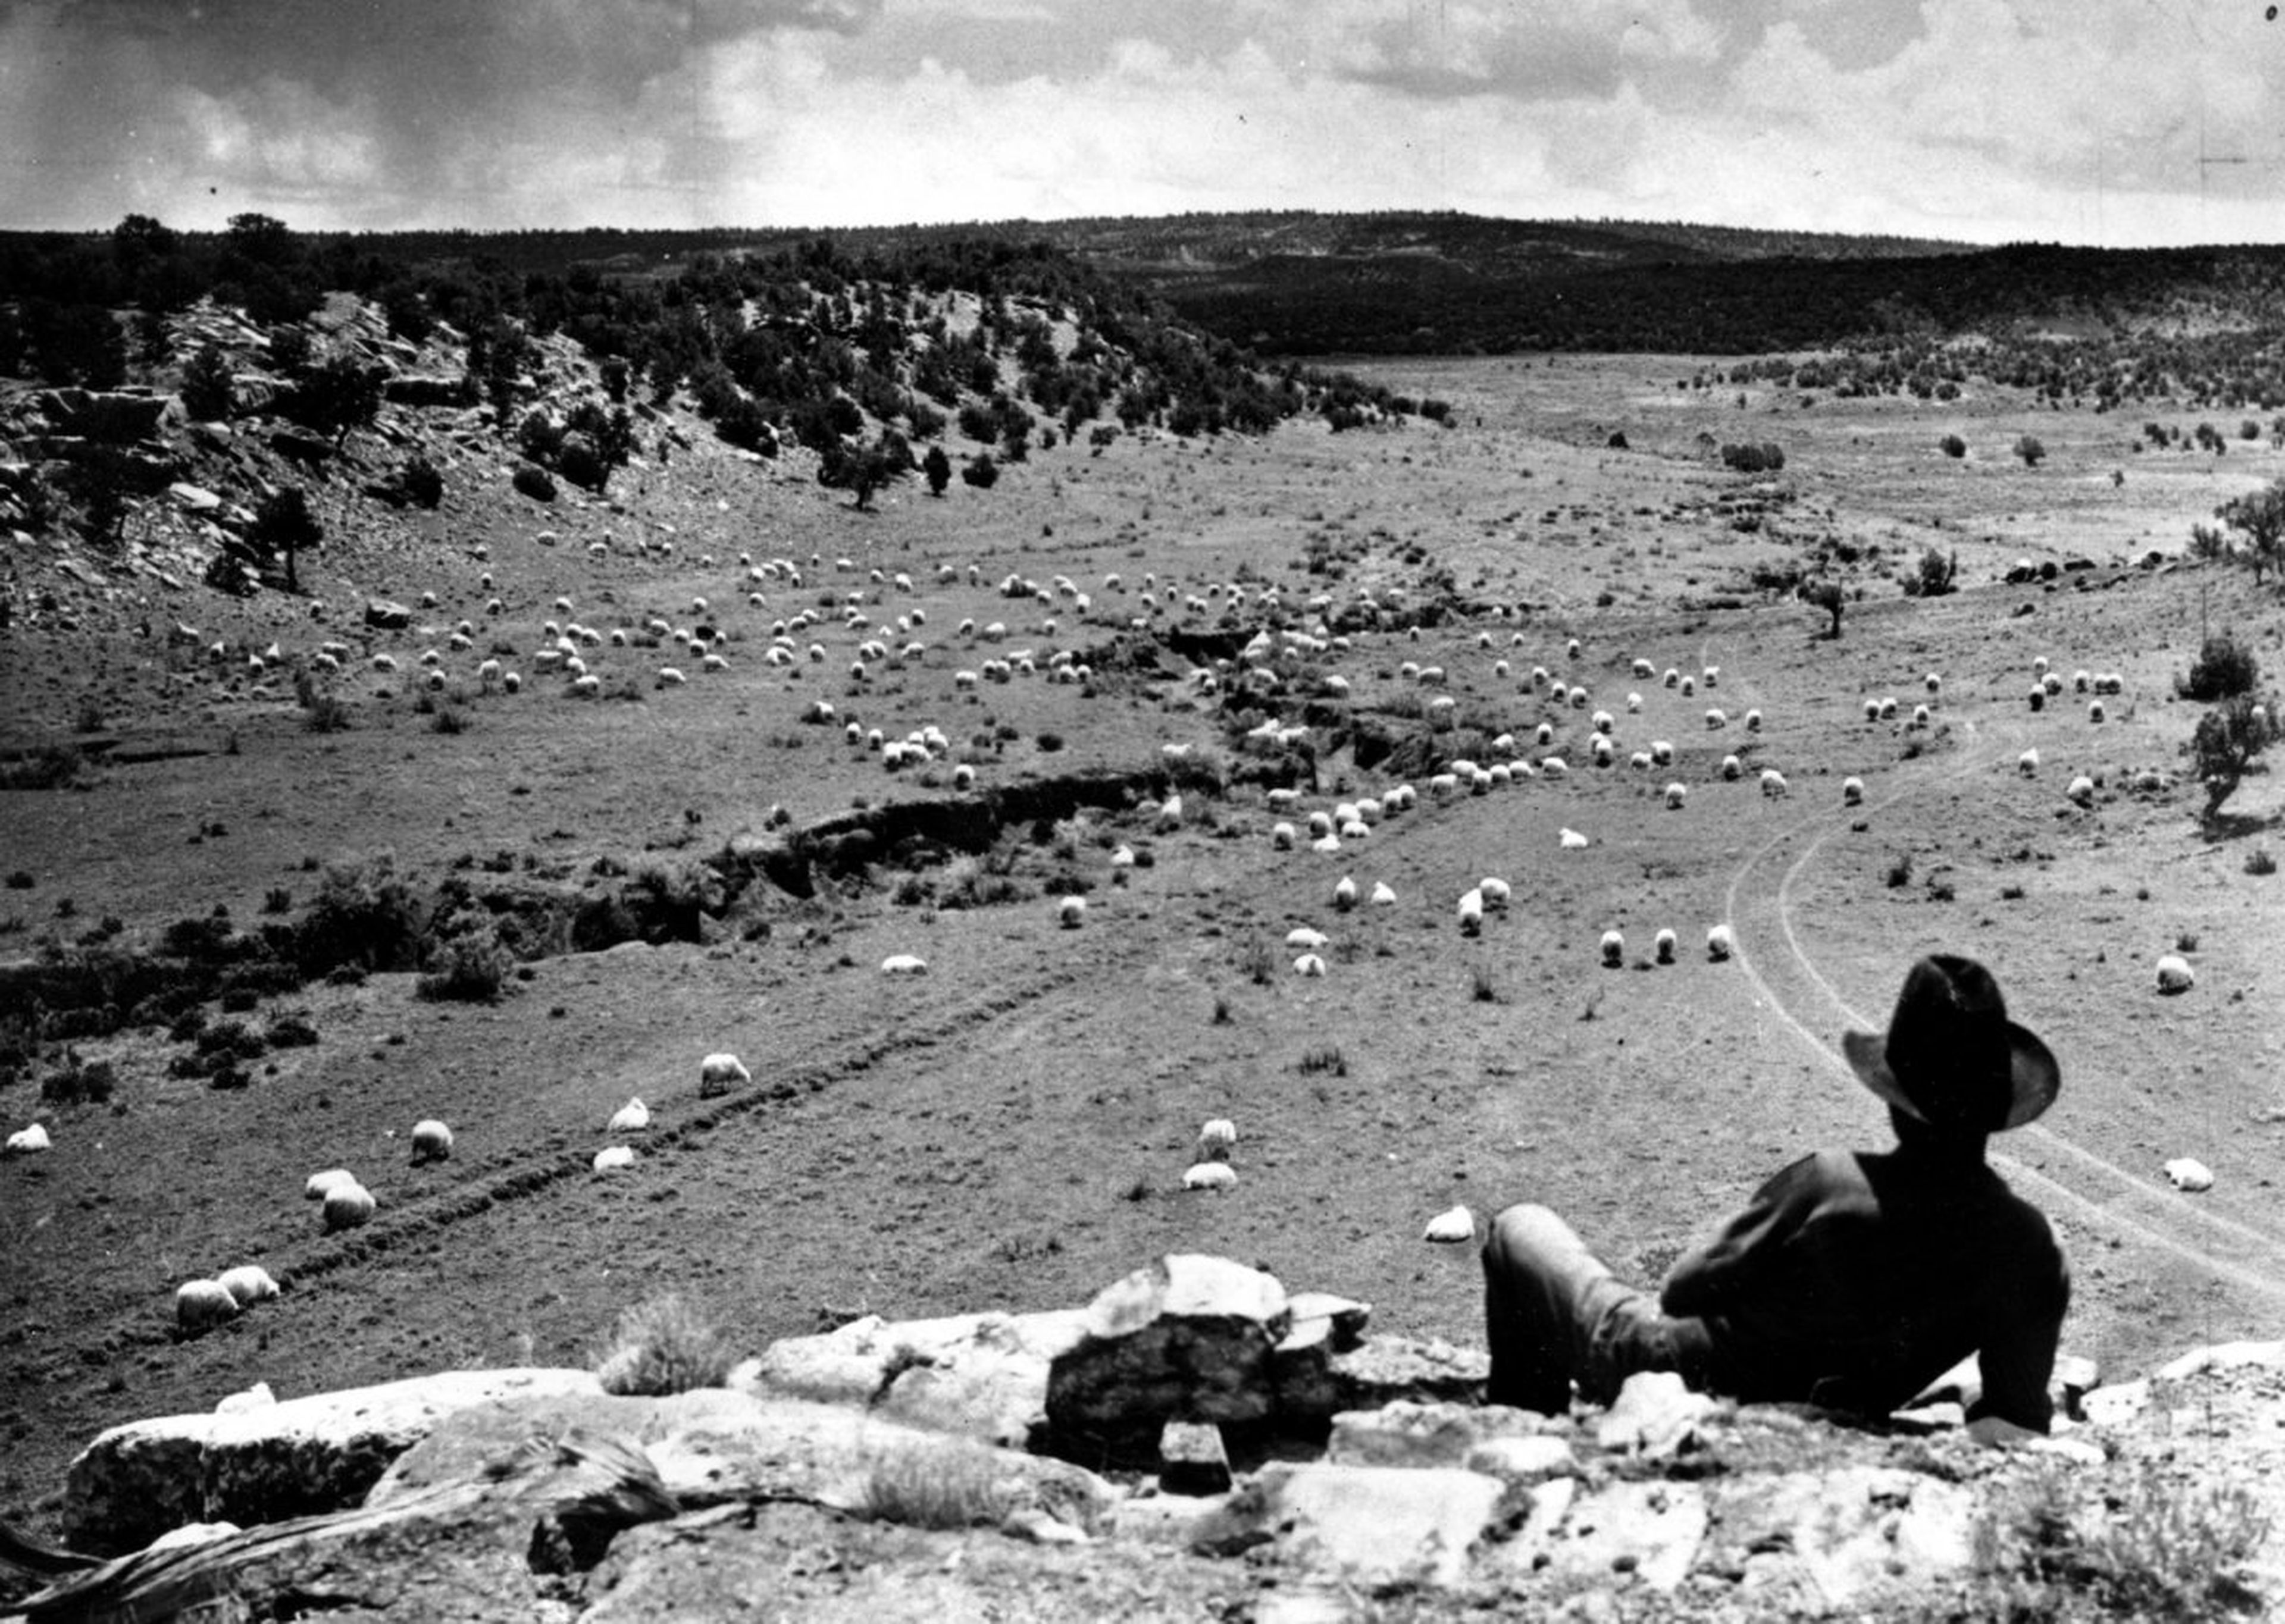 Un hombre navajo contempla su rebaño de ovejas en la reserva navajo en 1940, justo antes de la entrada de los Estados Unidos en la Segunda Guerra Mundial.